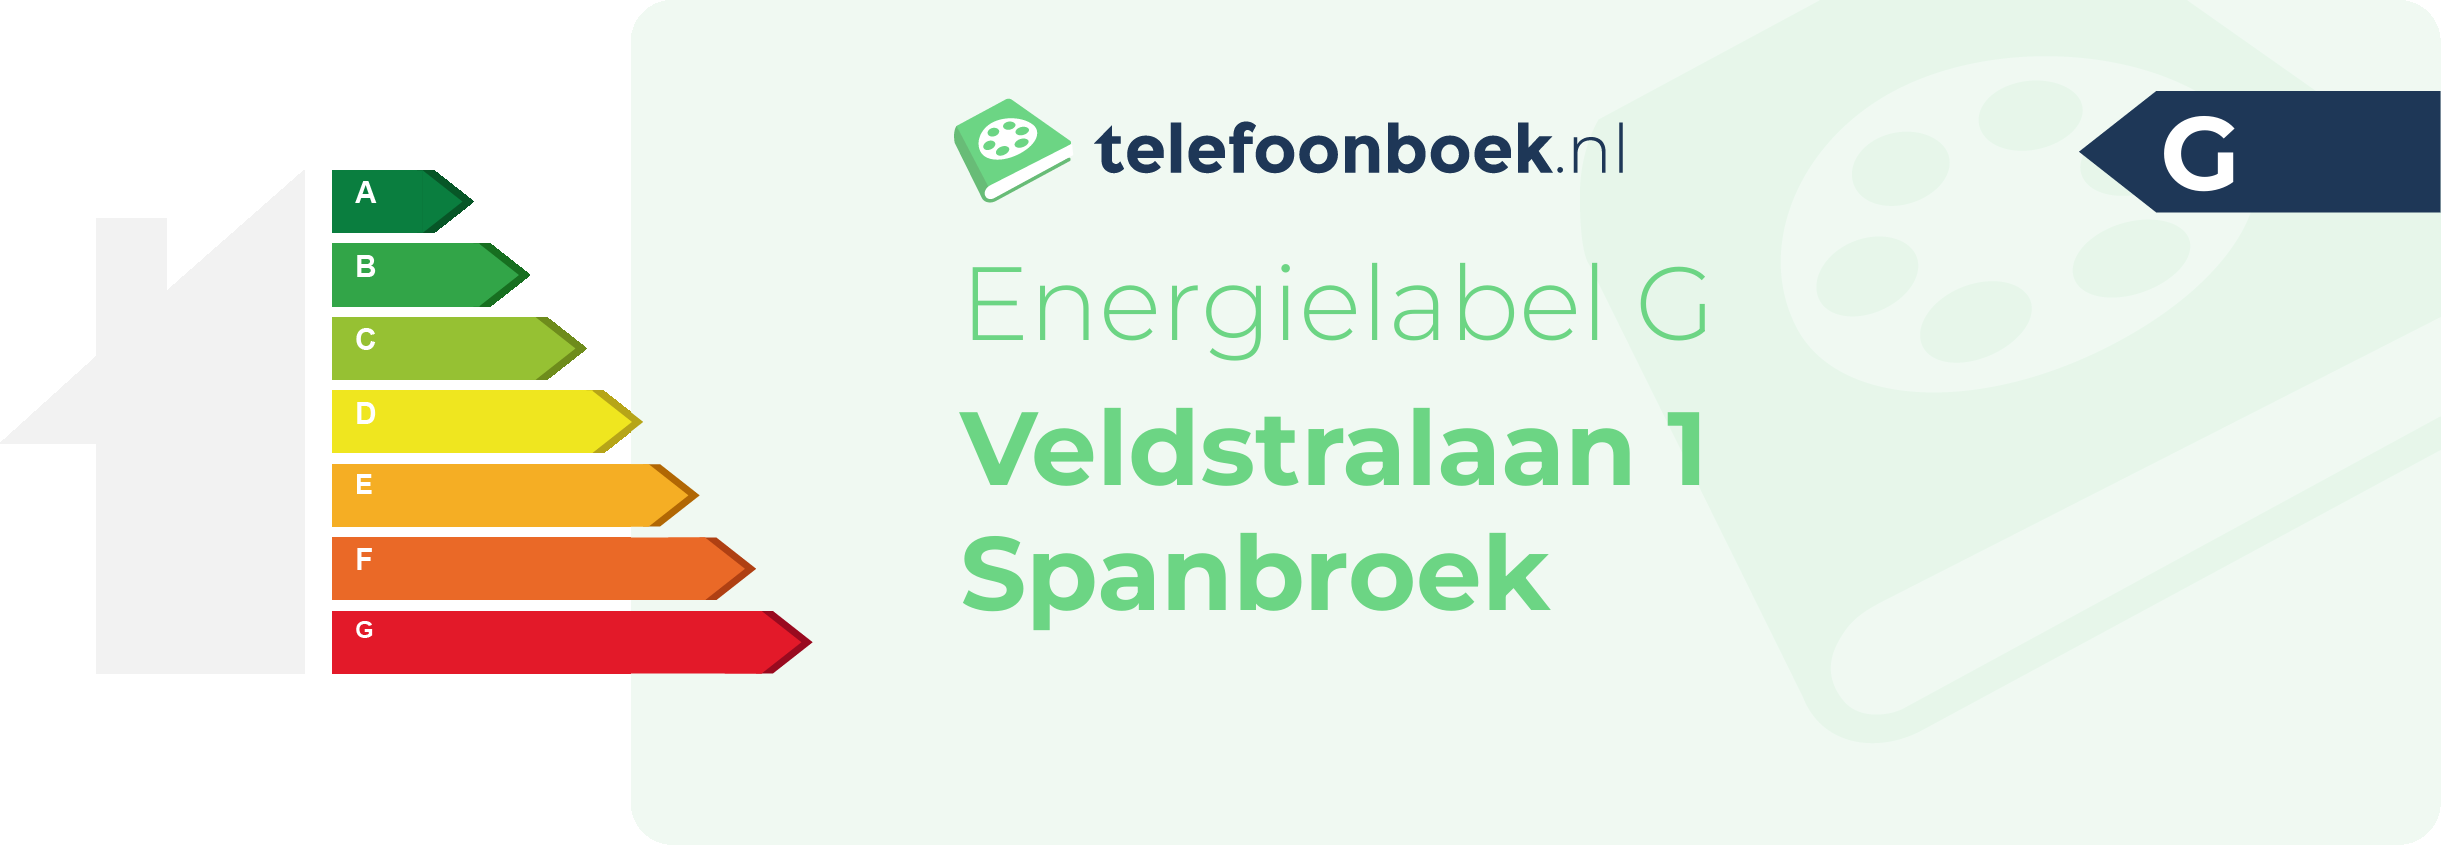 Energielabel Veldstralaan 1 Spanbroek